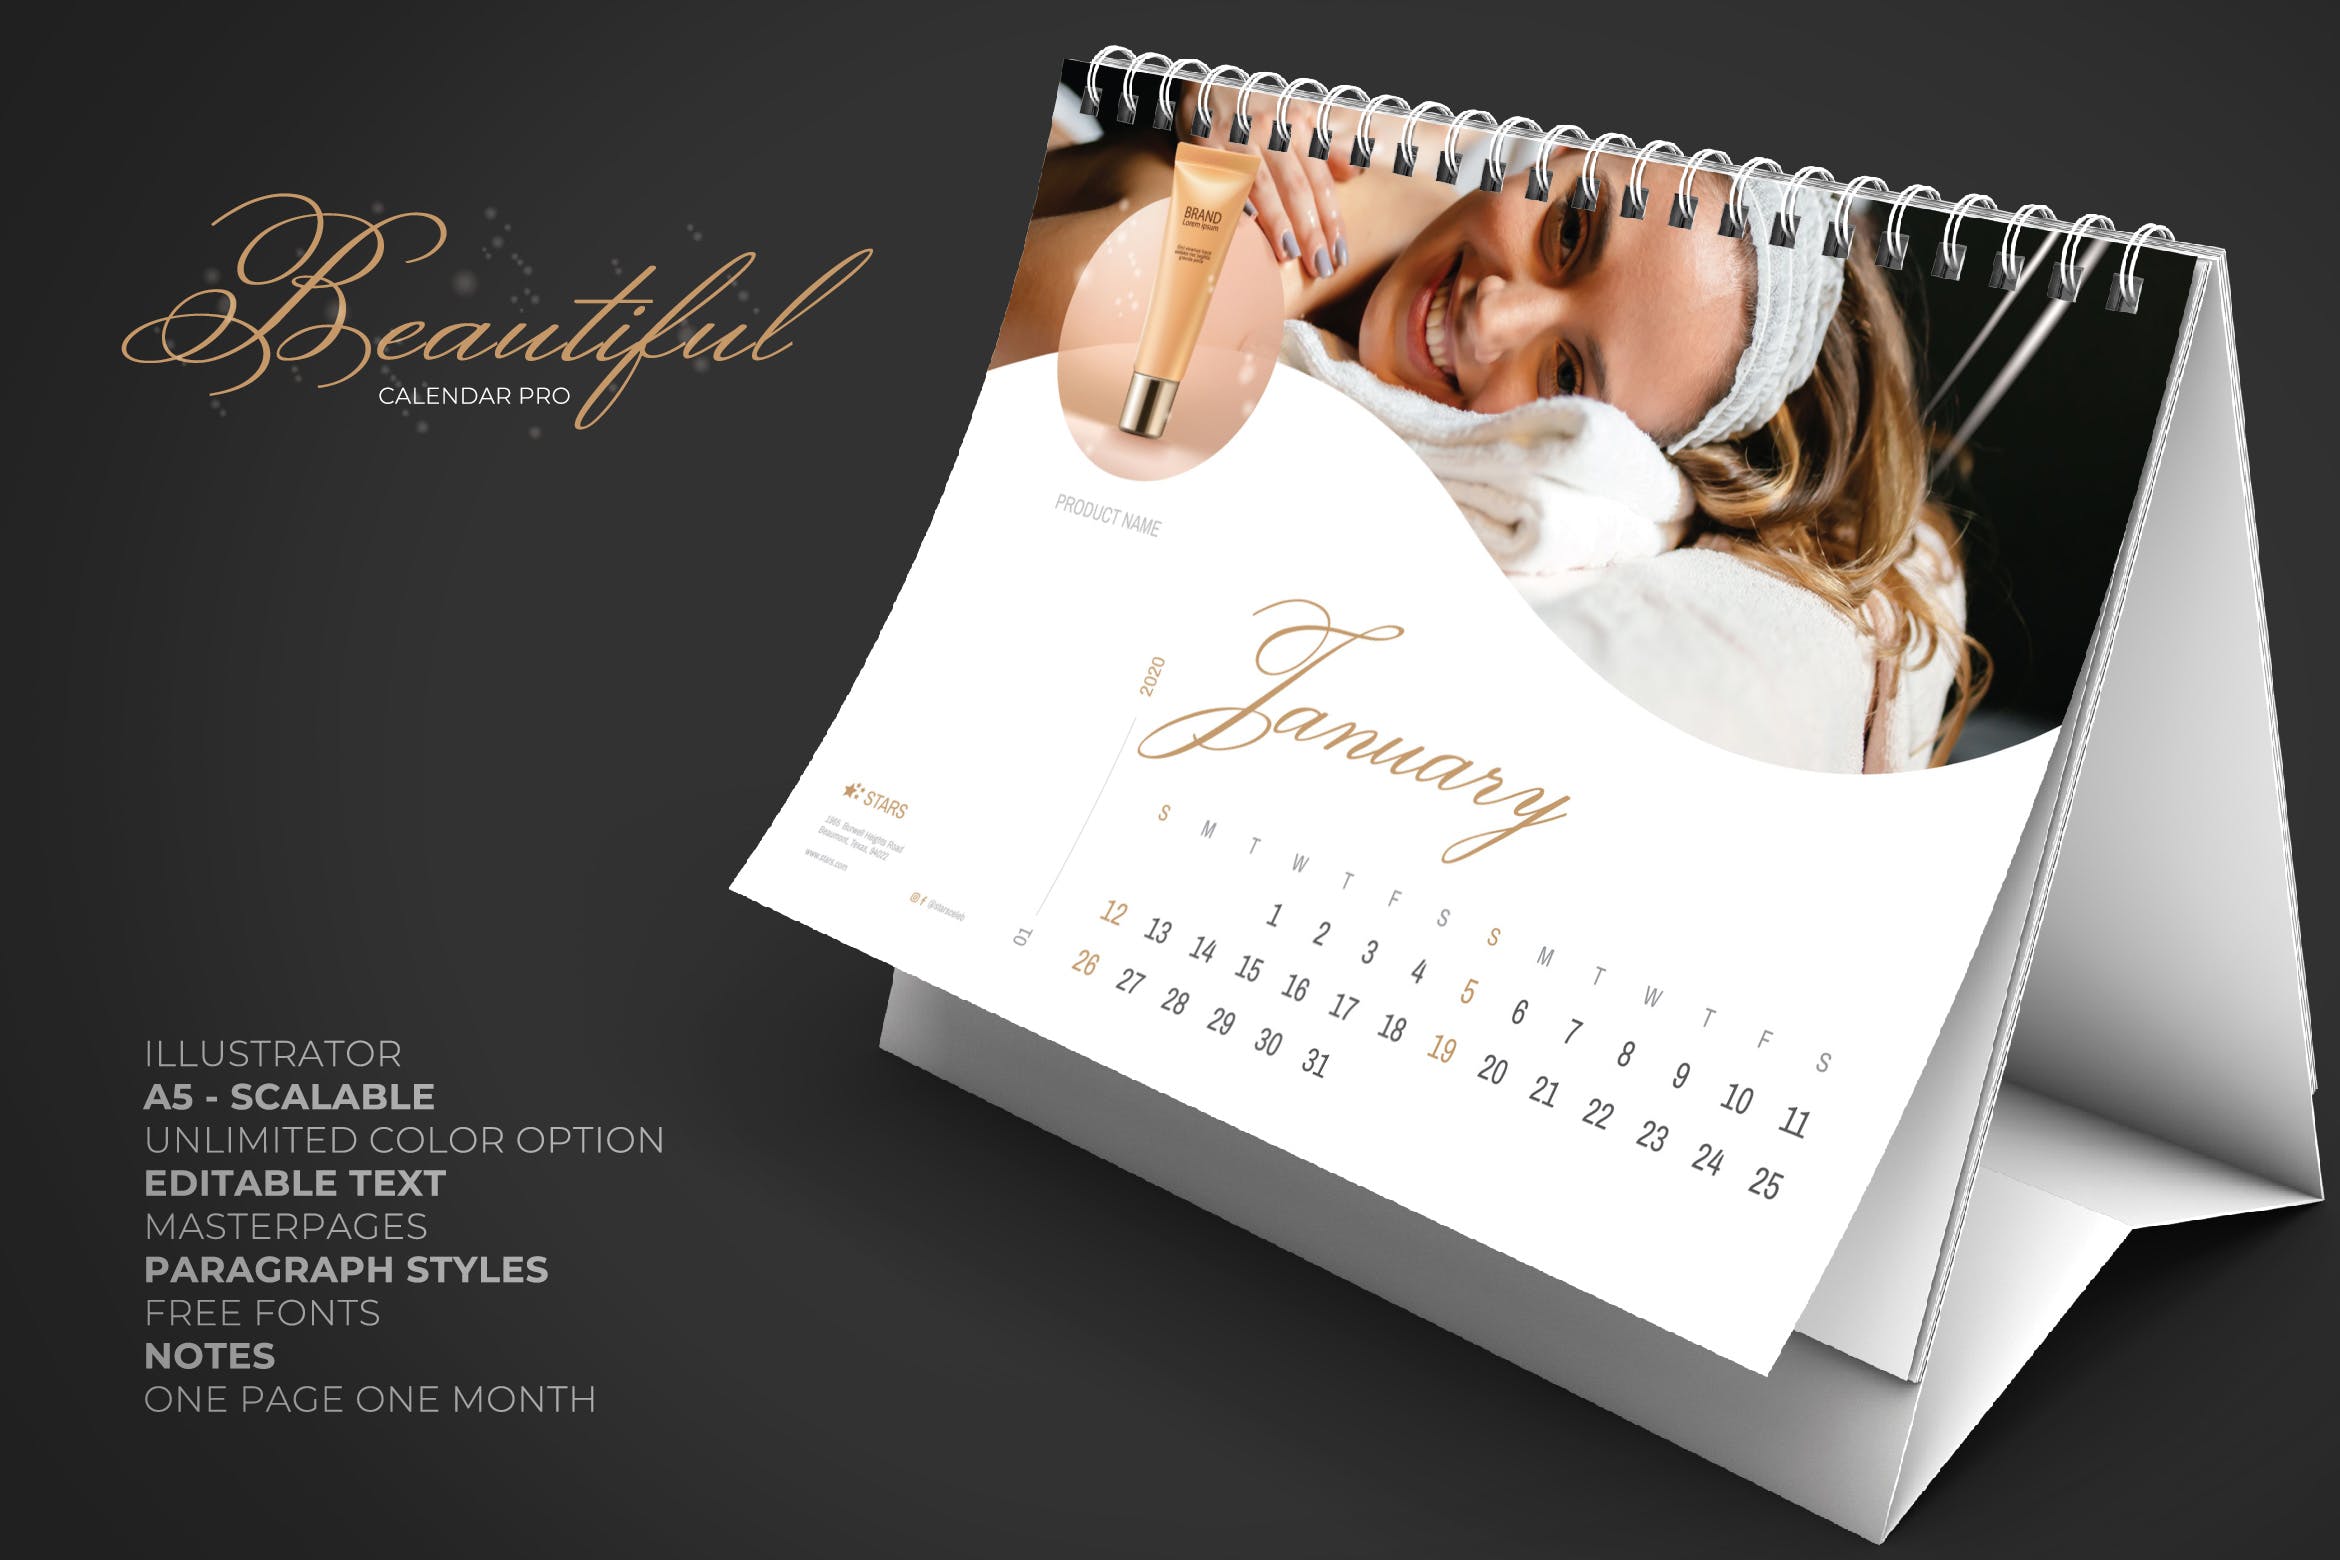 2020年美容行业定制横版活页台历设计模板 2020 Beauty Creative Calendar Pro插图